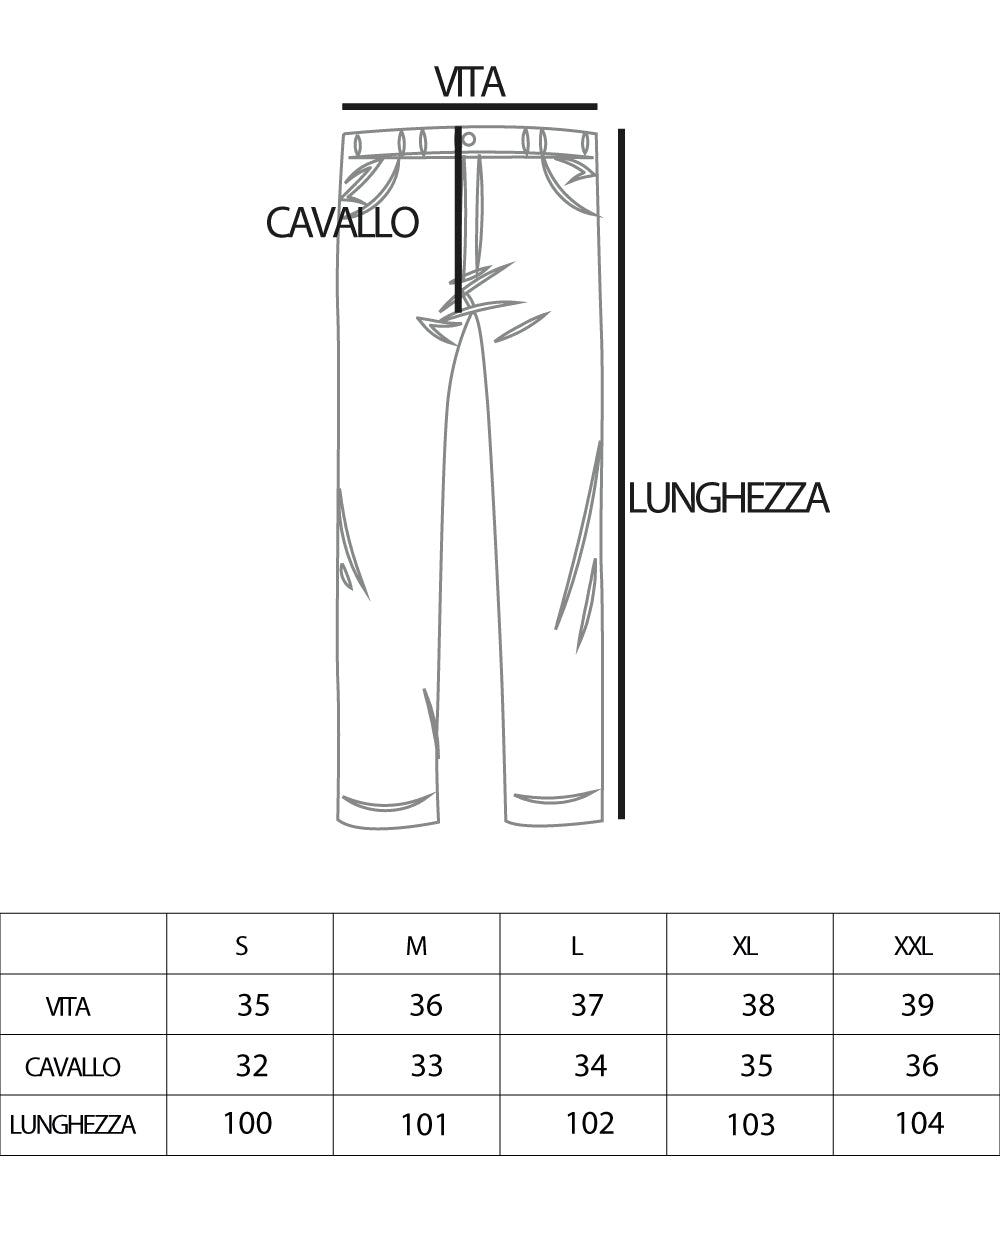 Pantaloni Uomo Baggy Lungo Abbottonatura Allungata Elastico Sul Retro Lino Bianco Casual GIOSAL-P5894A